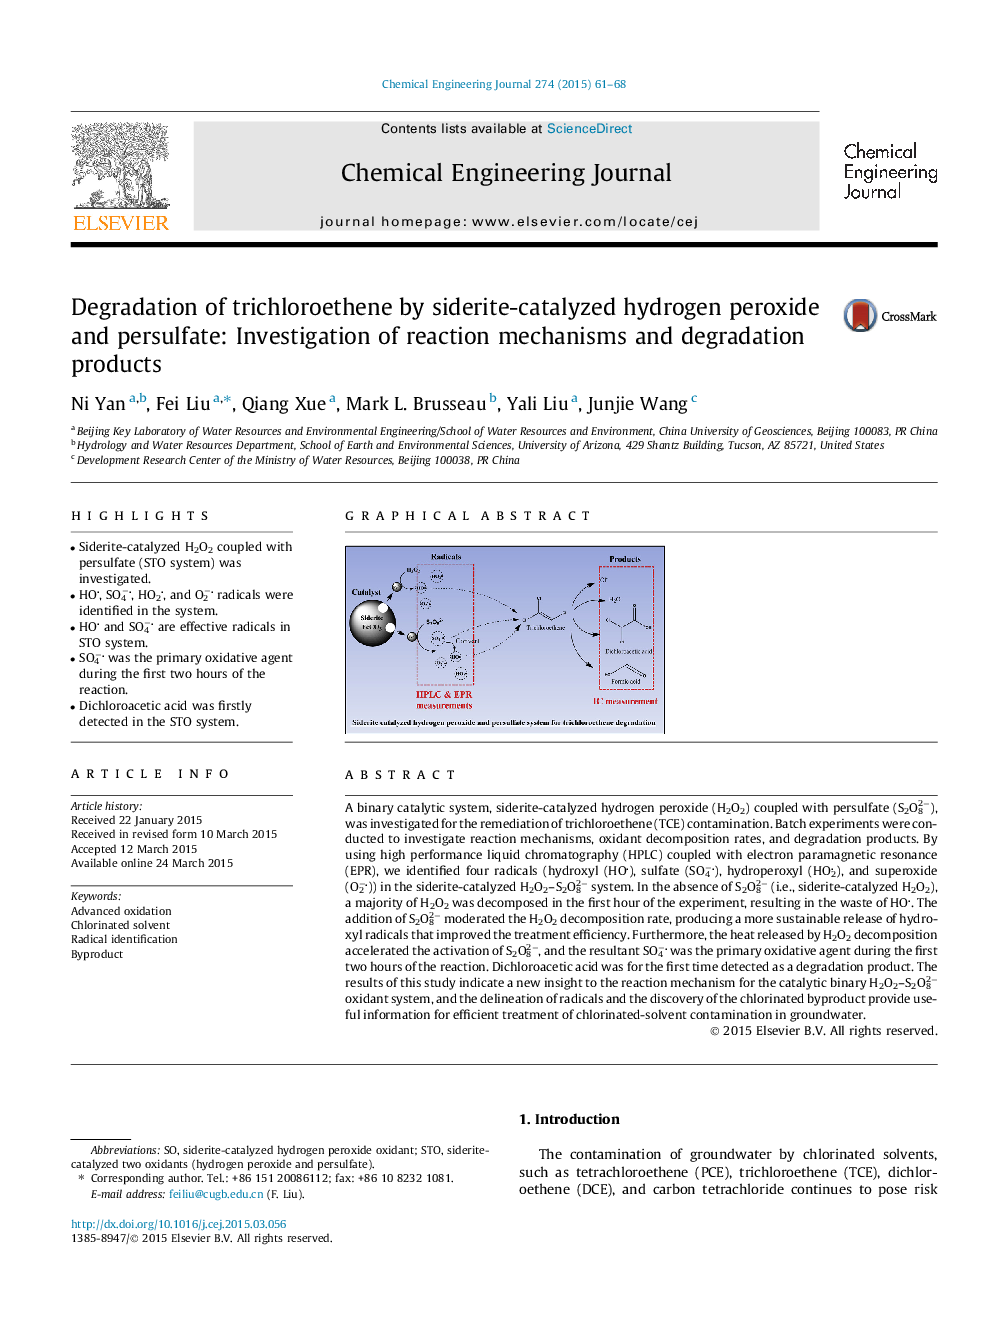 تجزیه ترشکلئوتن توسط پراکسید هیدروژن سدیریت و پرسولفات: بررسی سازوکارهای واکنش و محصولات تجزیه 